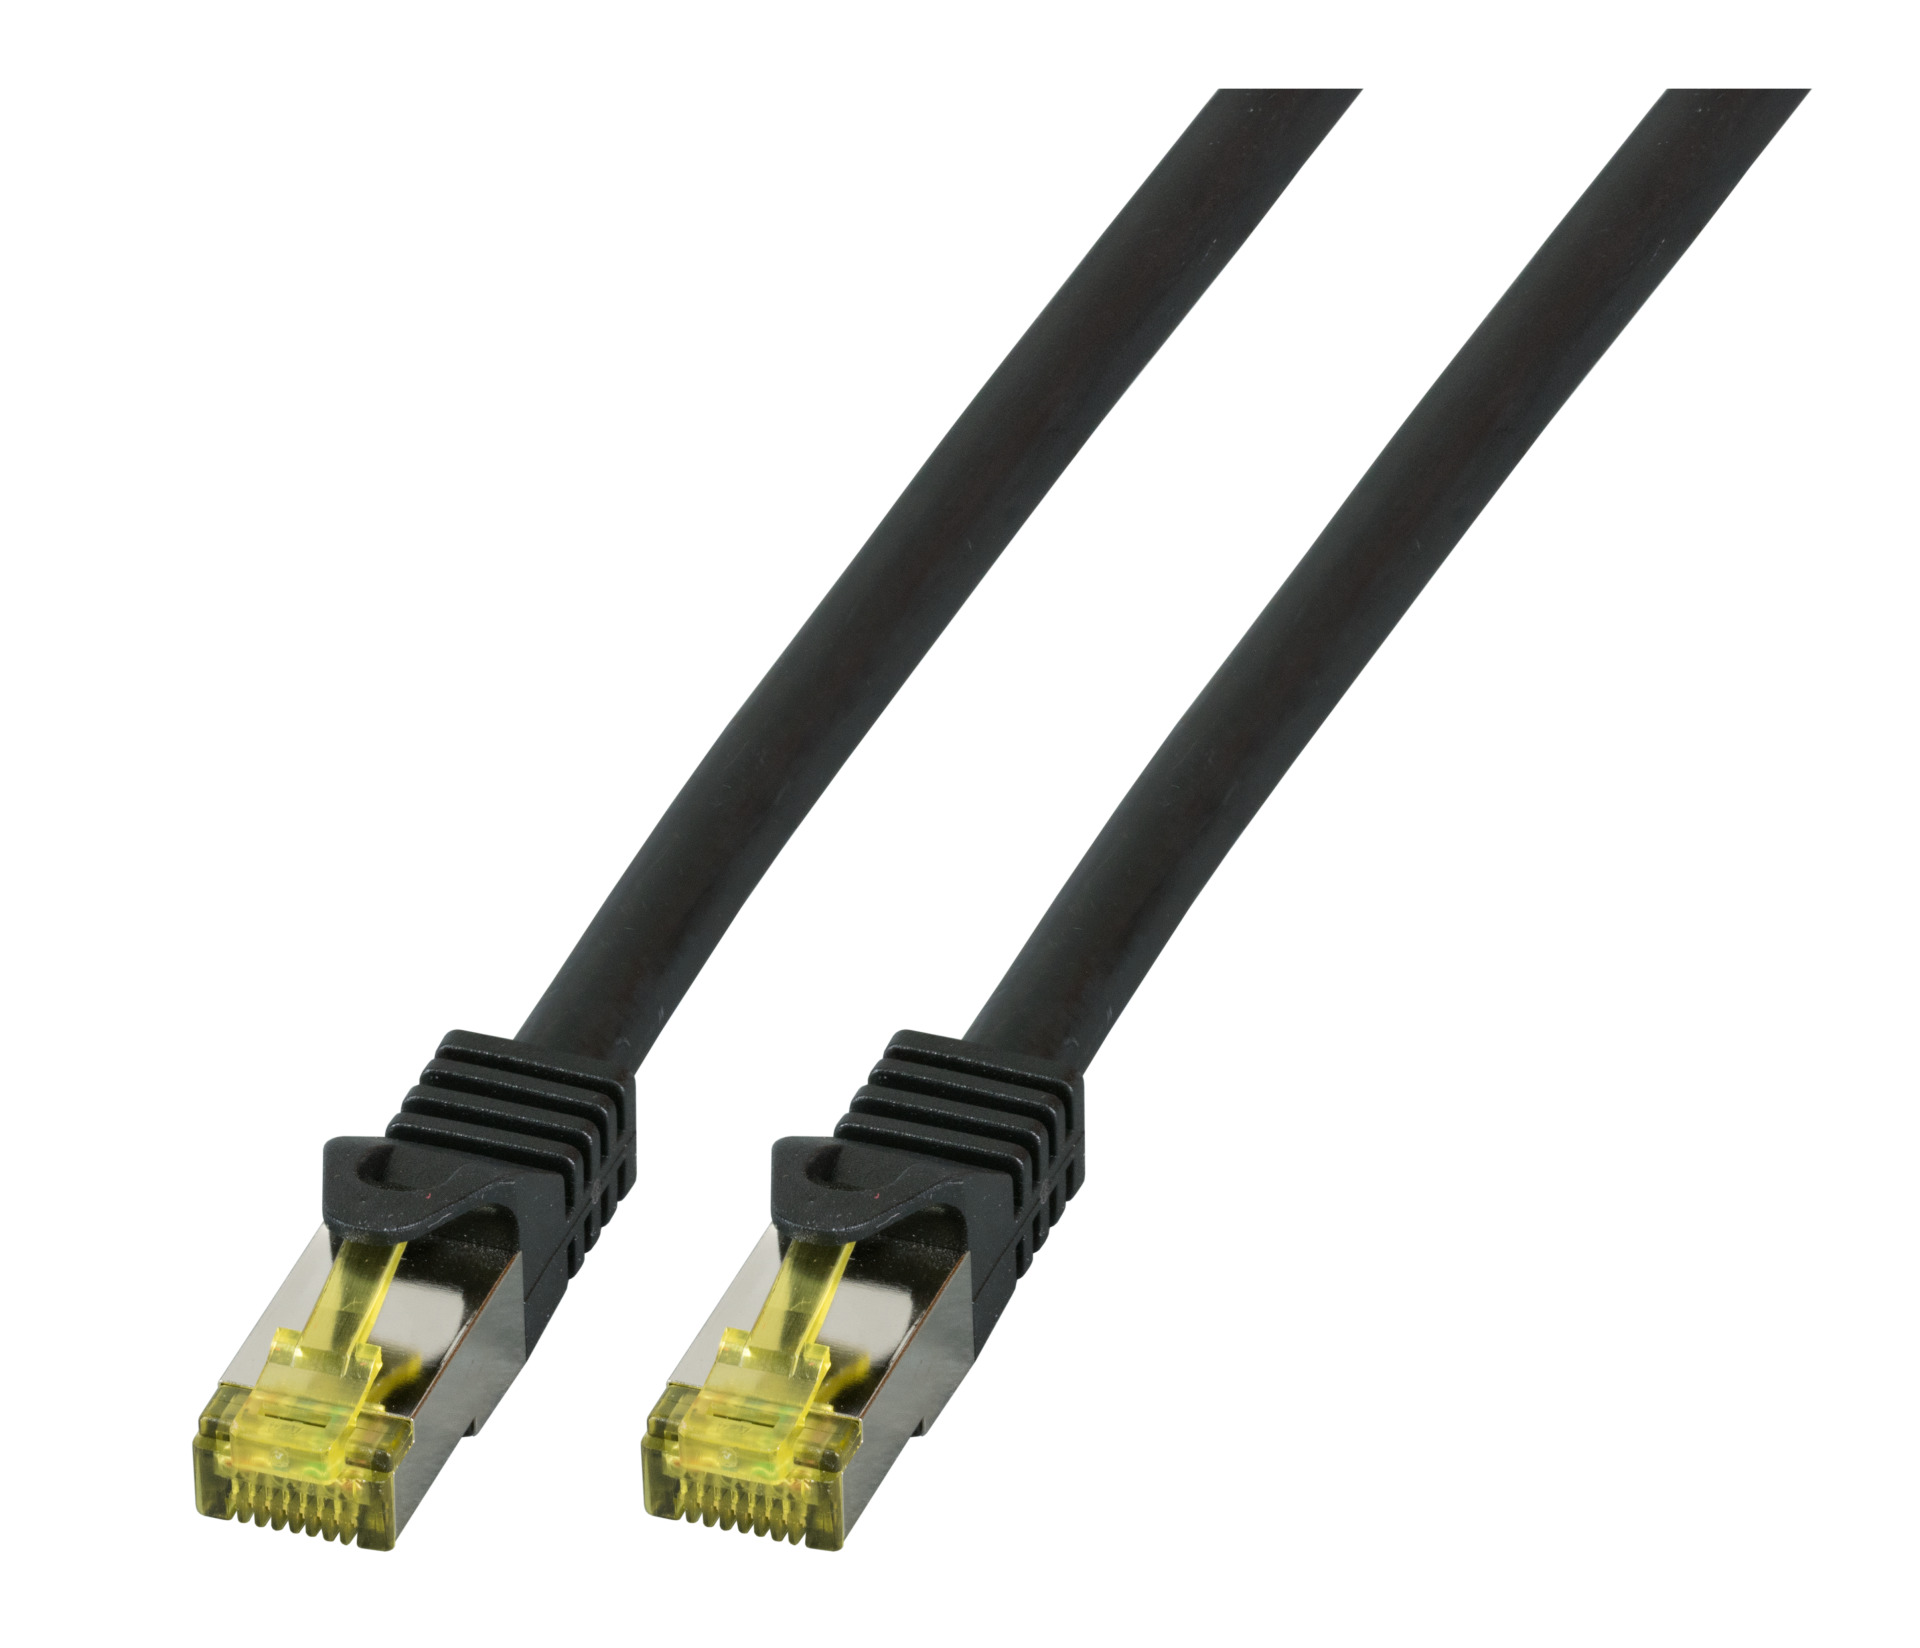 RJ45 Patch cable S/FTP, Cat.6A, LSZH, Cat.7 Raw cable, 1m, black